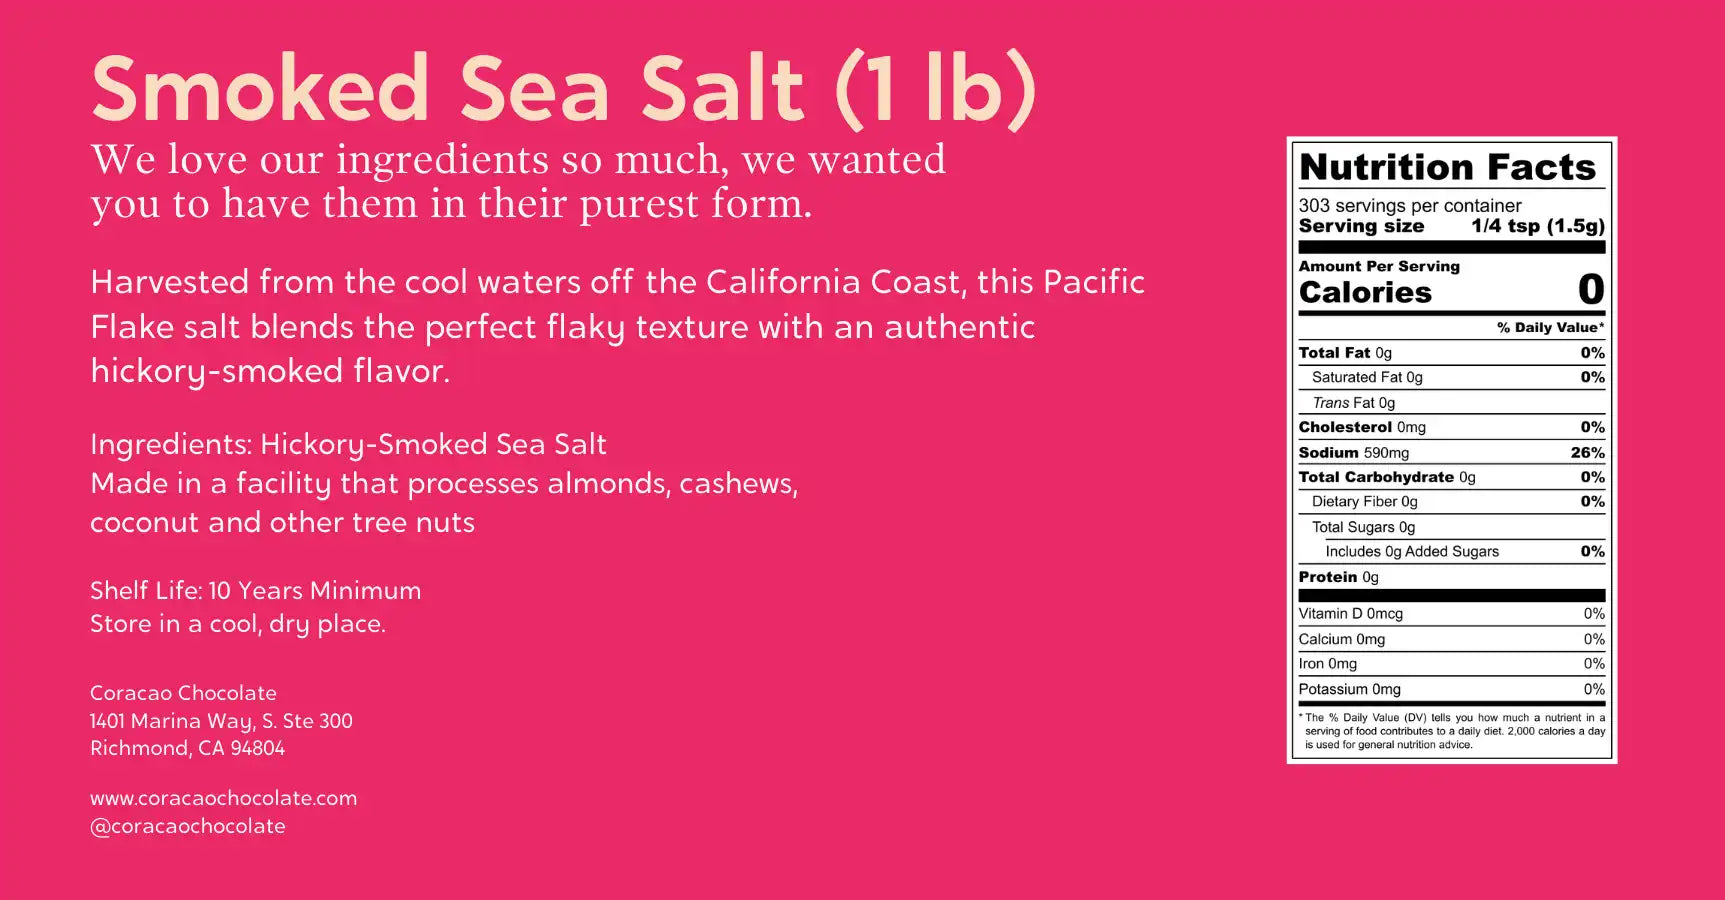 Smoked Sea Salt (1 lb)